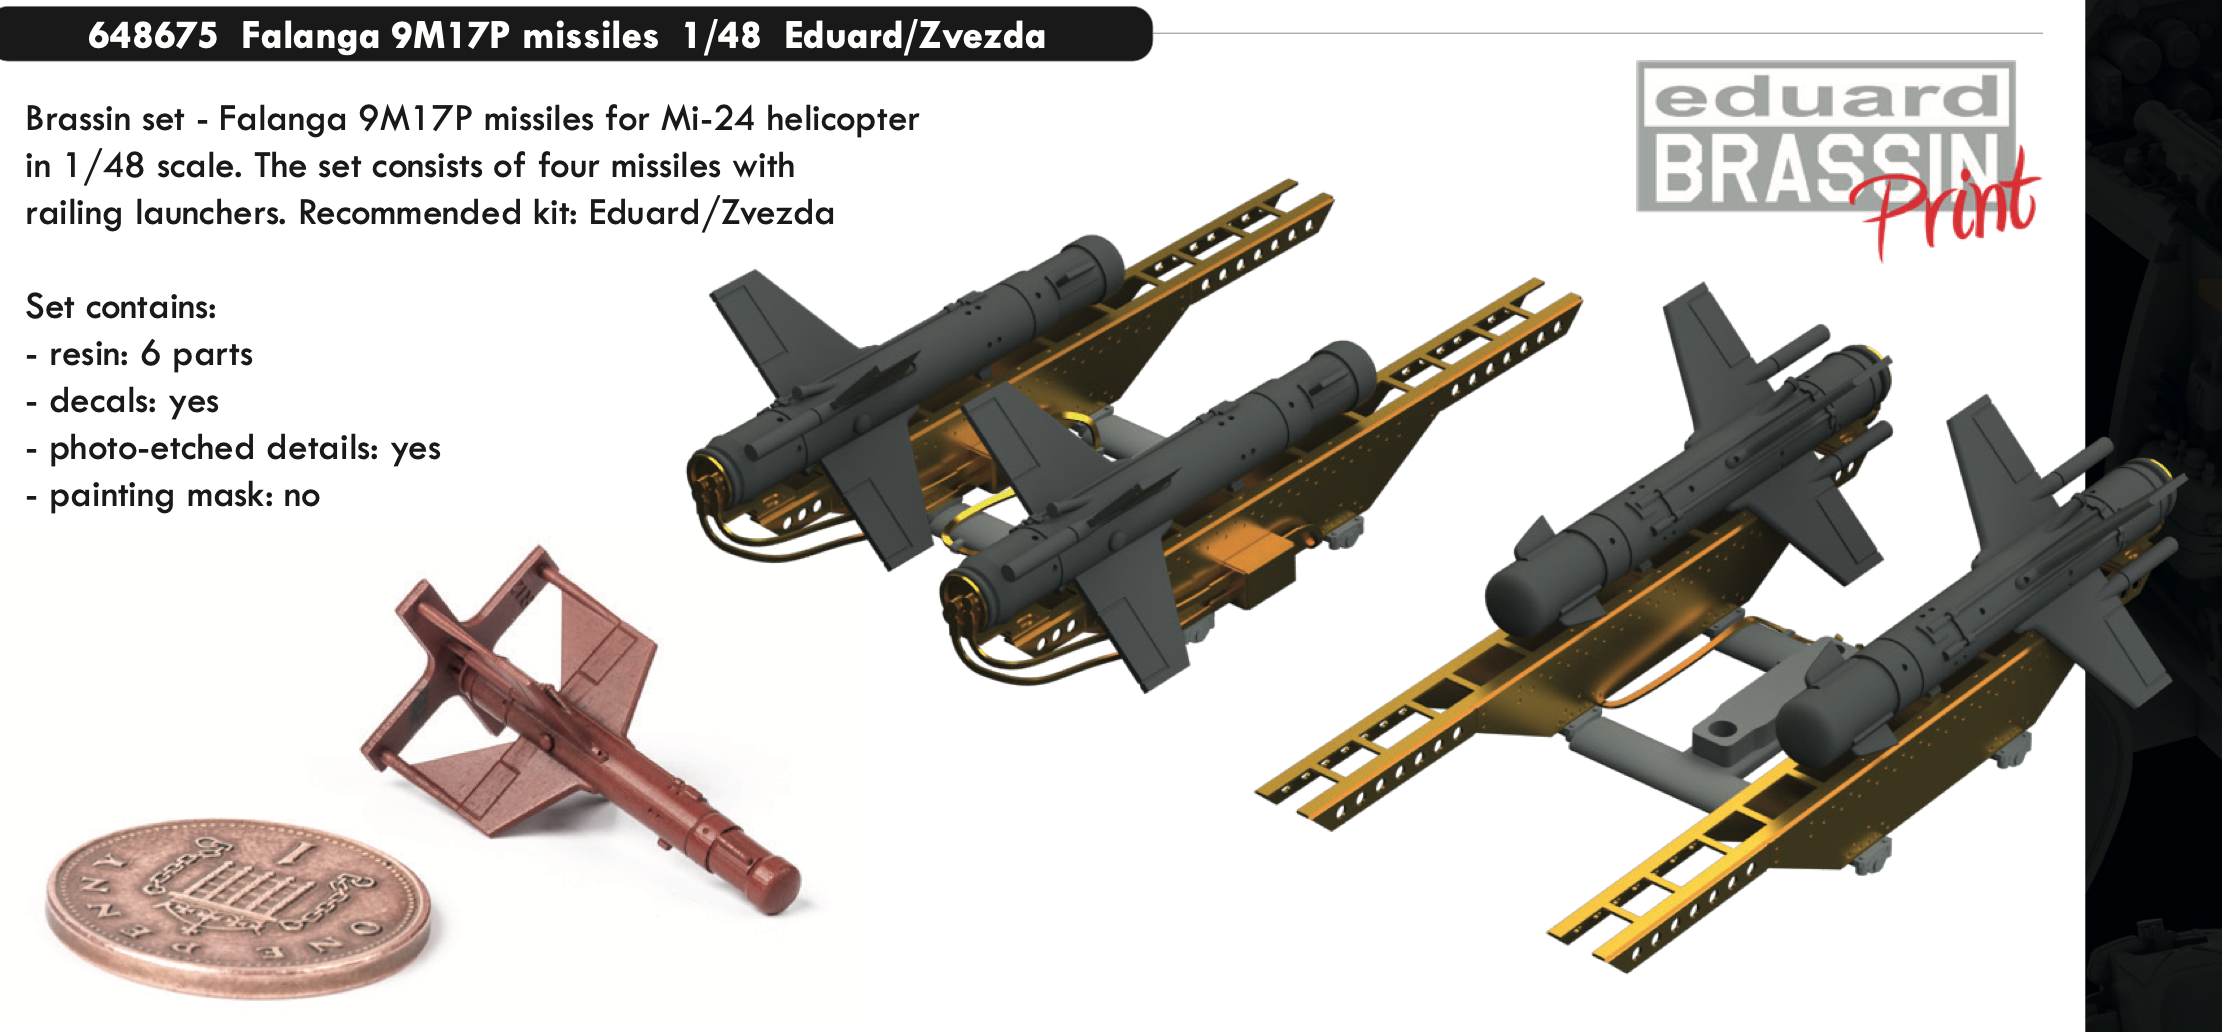 Дополнения из смолы 1/48 Ракеты 9М17П "Фаланга" (для моделей Eduard/Zvezda)